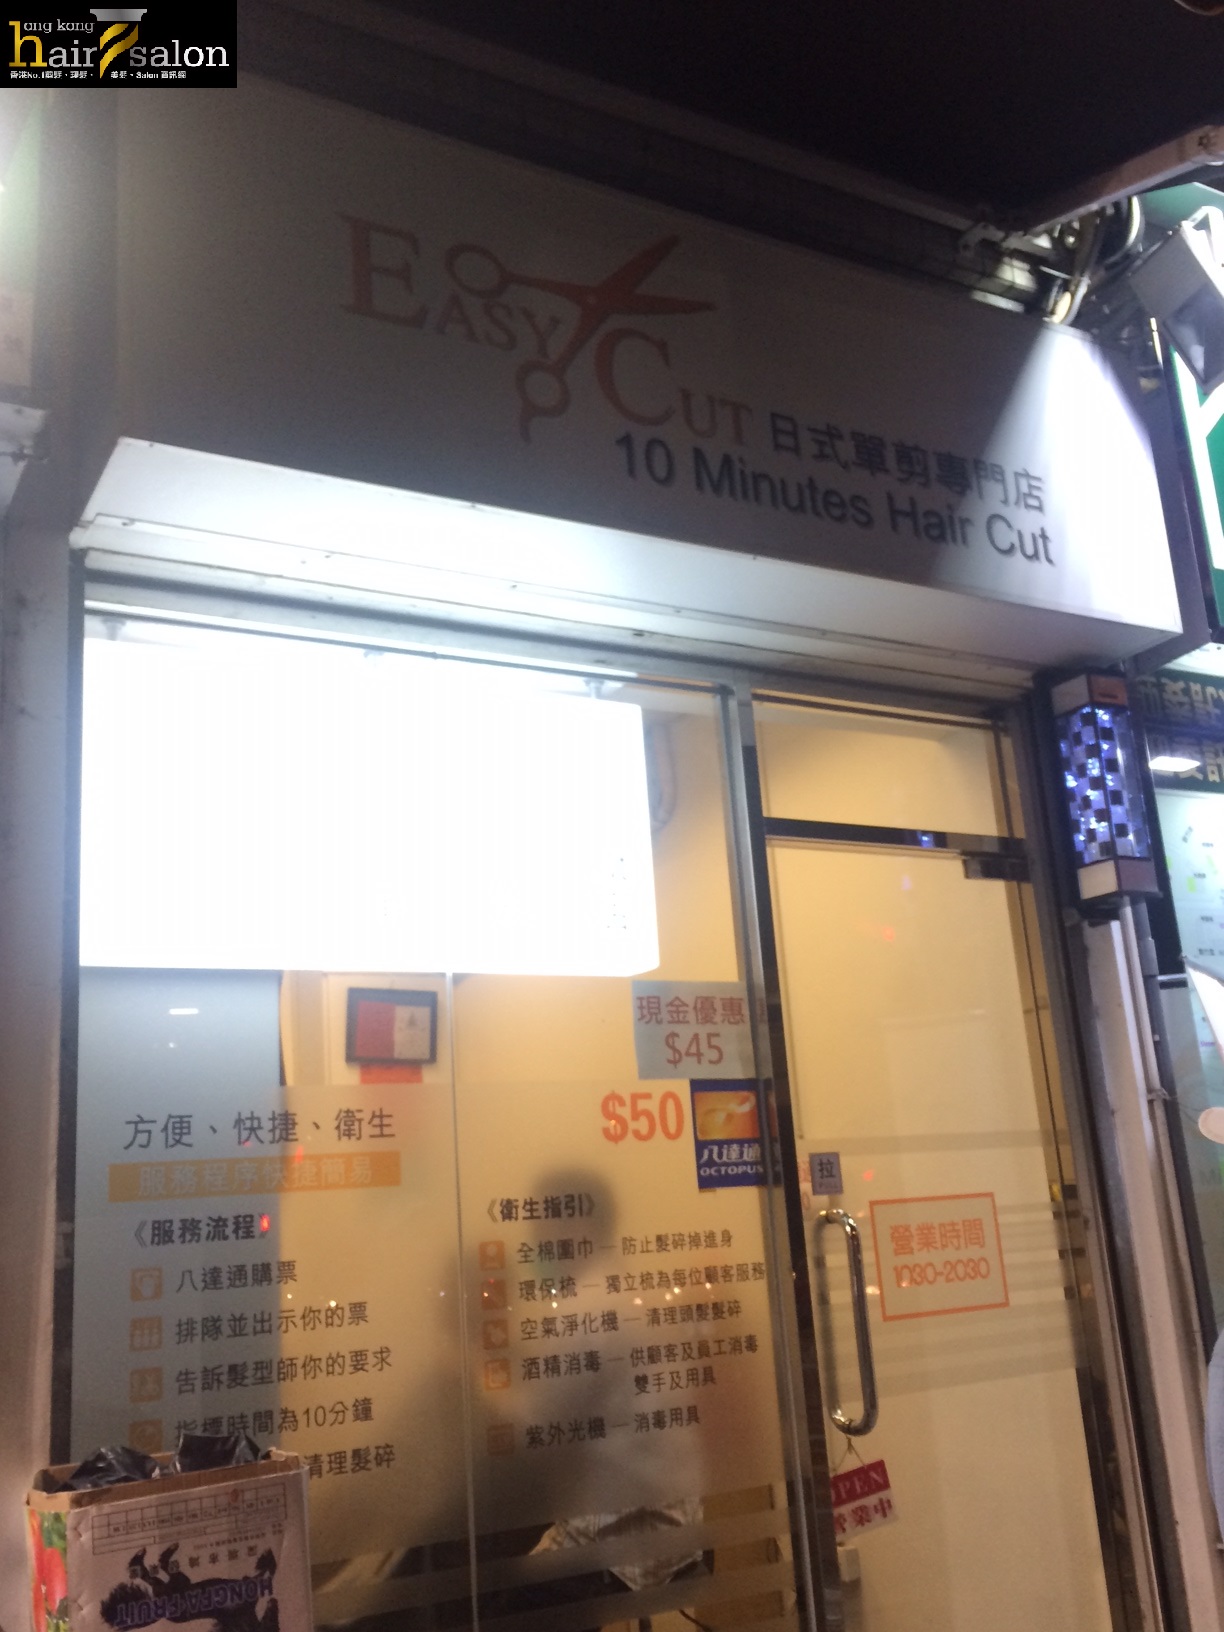 香港美髮網 HK Hair Salon 髮型屋Salon / 髮型師: Easy Cut 日式單剪專門店